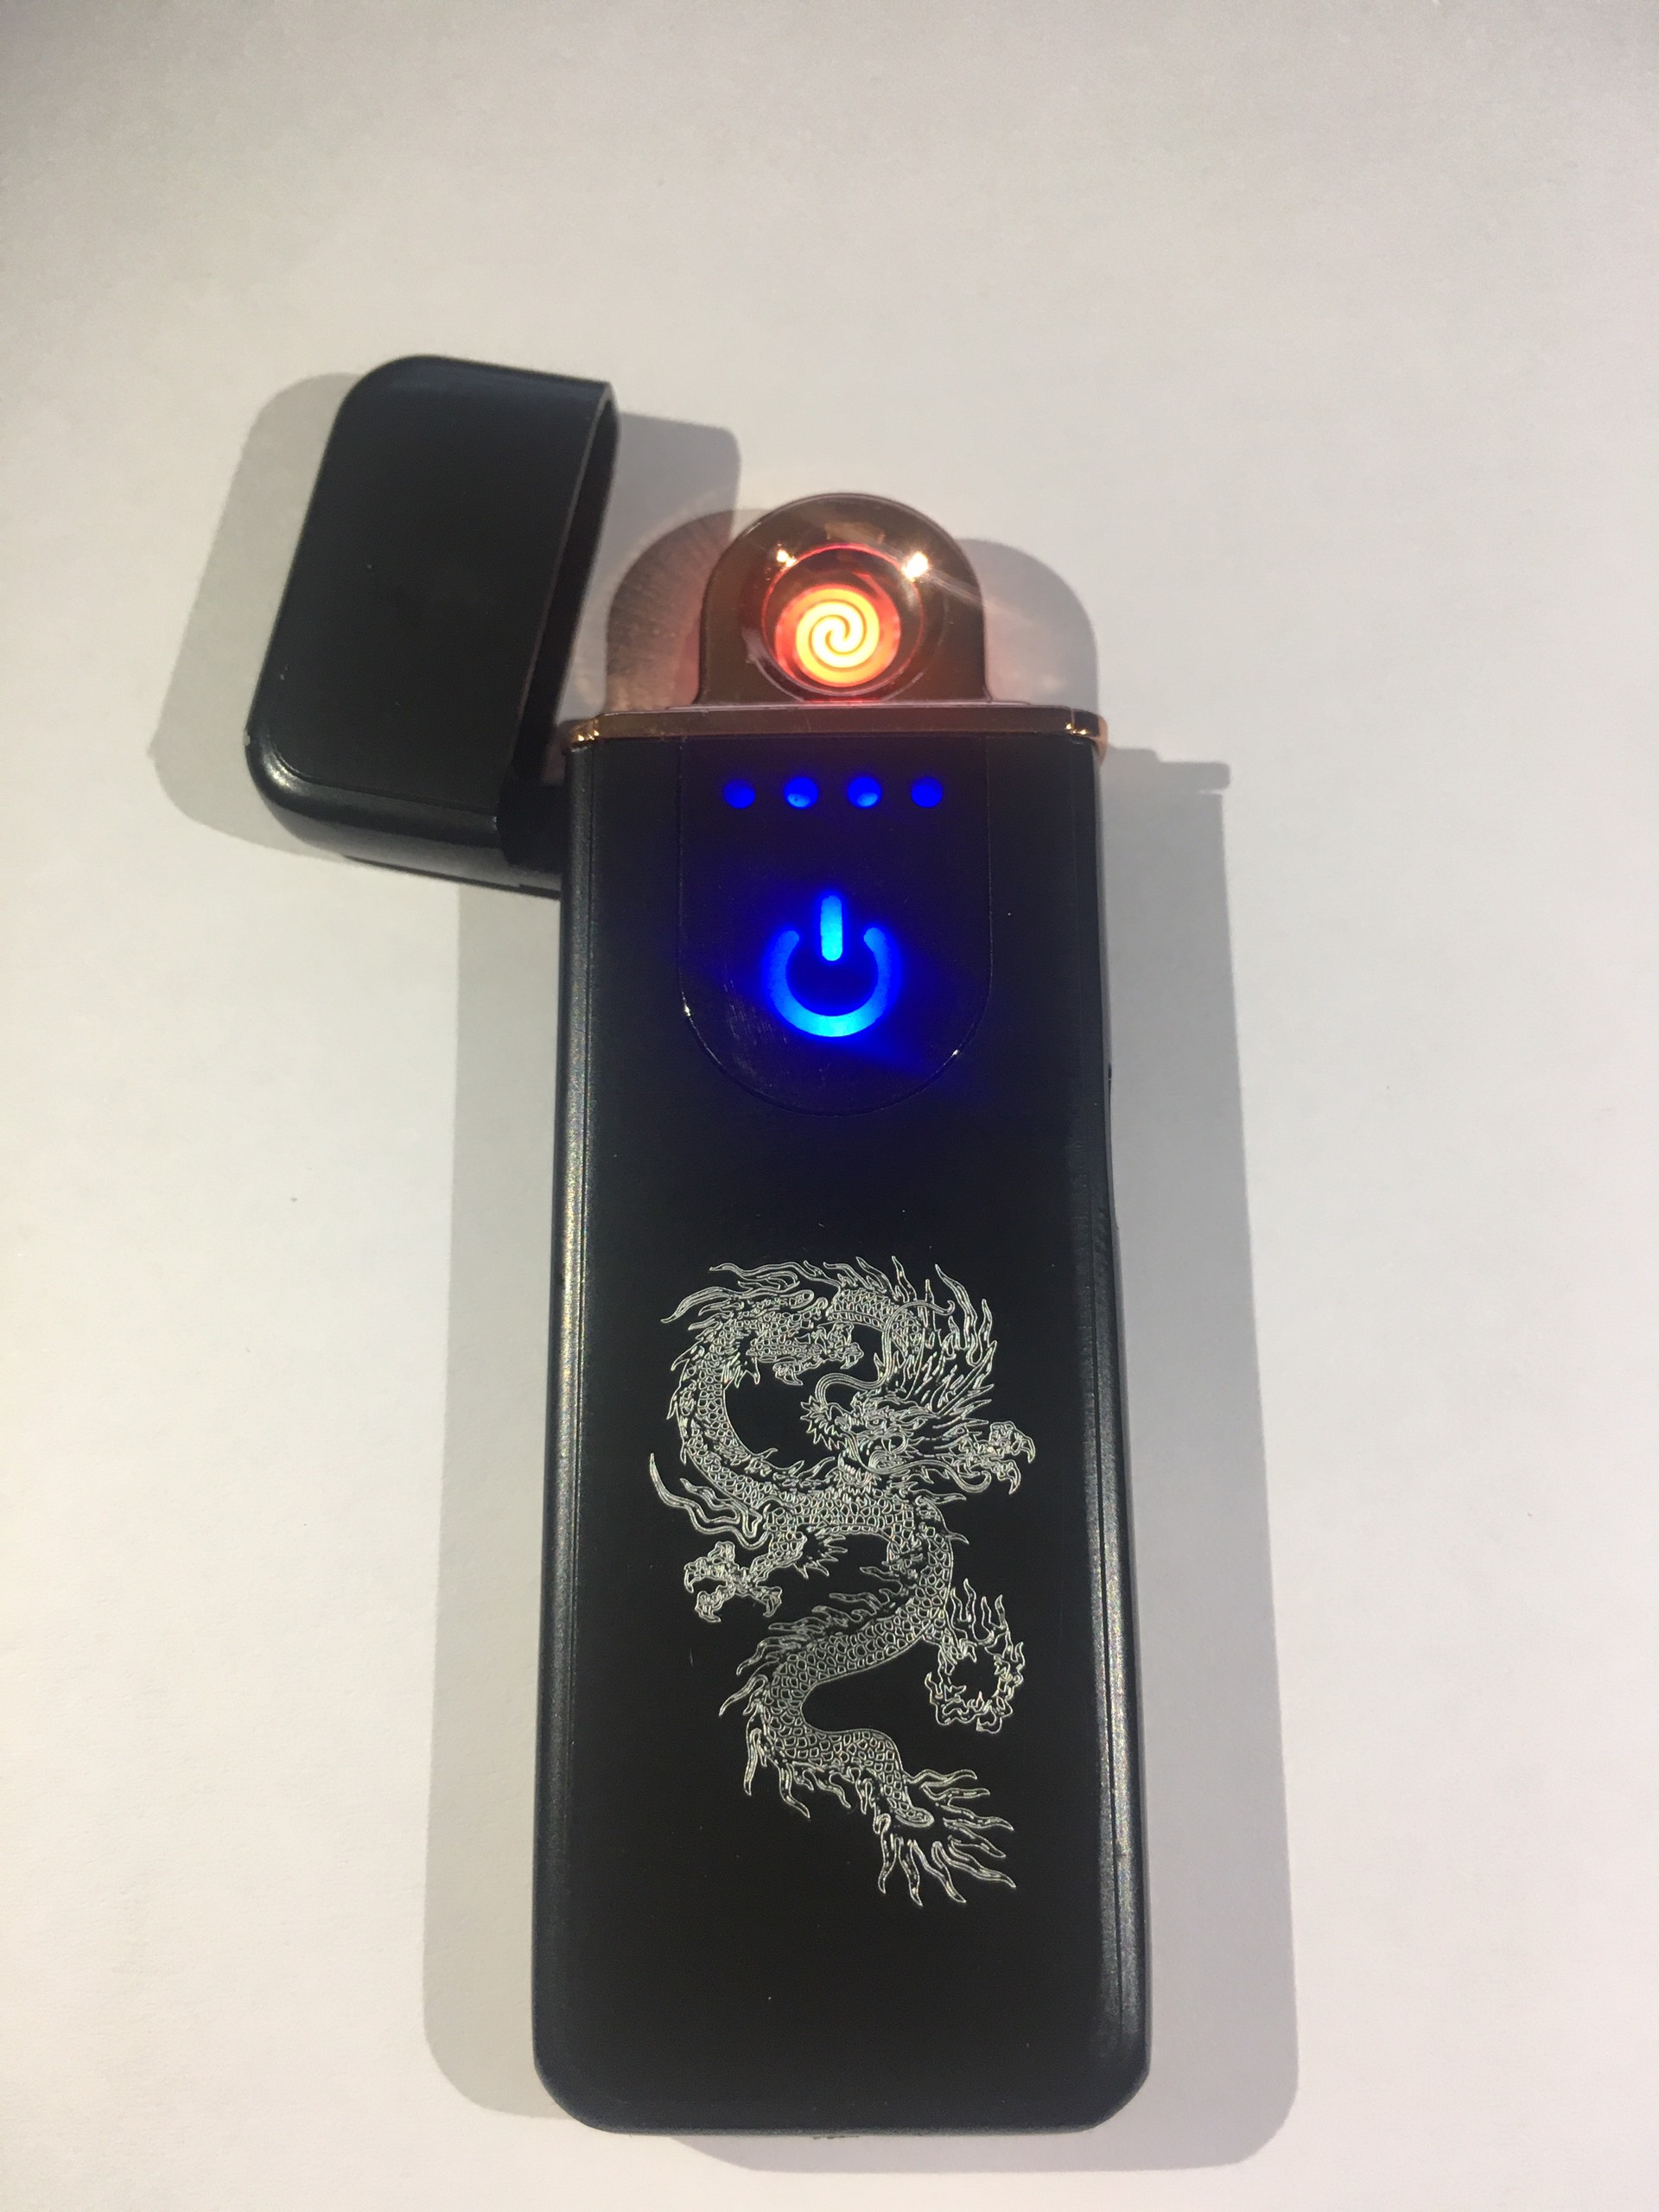 Bật lửa điện hồng ngoại Lighter bật lửa cảm ứng vân tay pin sạc, hộp quẹt hồng ngoại (Tặng Kèm Dây Cáp Sạc) - BLD001